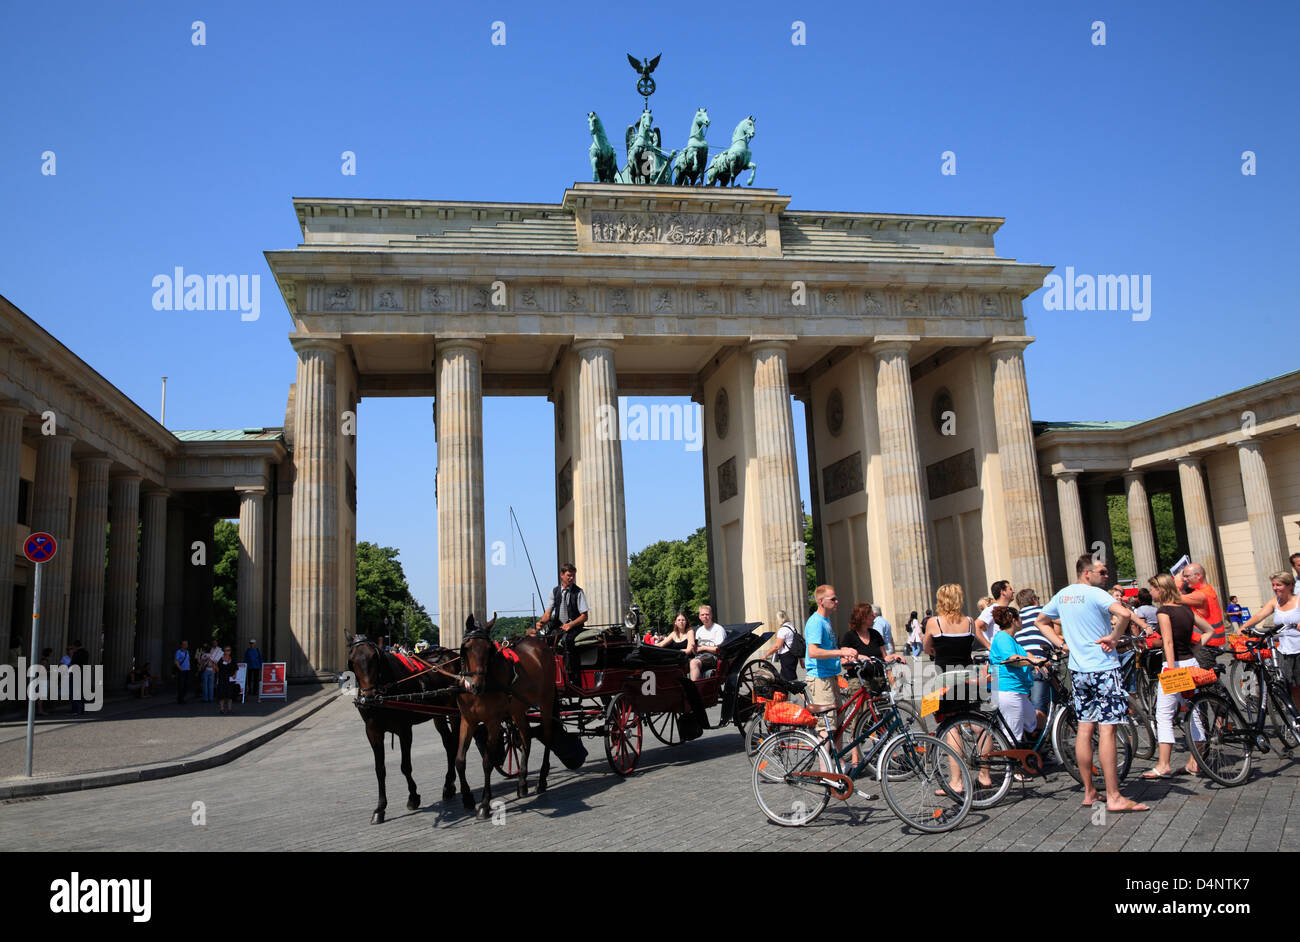 La Porta di Brandeburgo, Brandenburger Tor, guideded tour in bicicletta si ferma di fronte al gate, Berlino, Germania Foto Stock